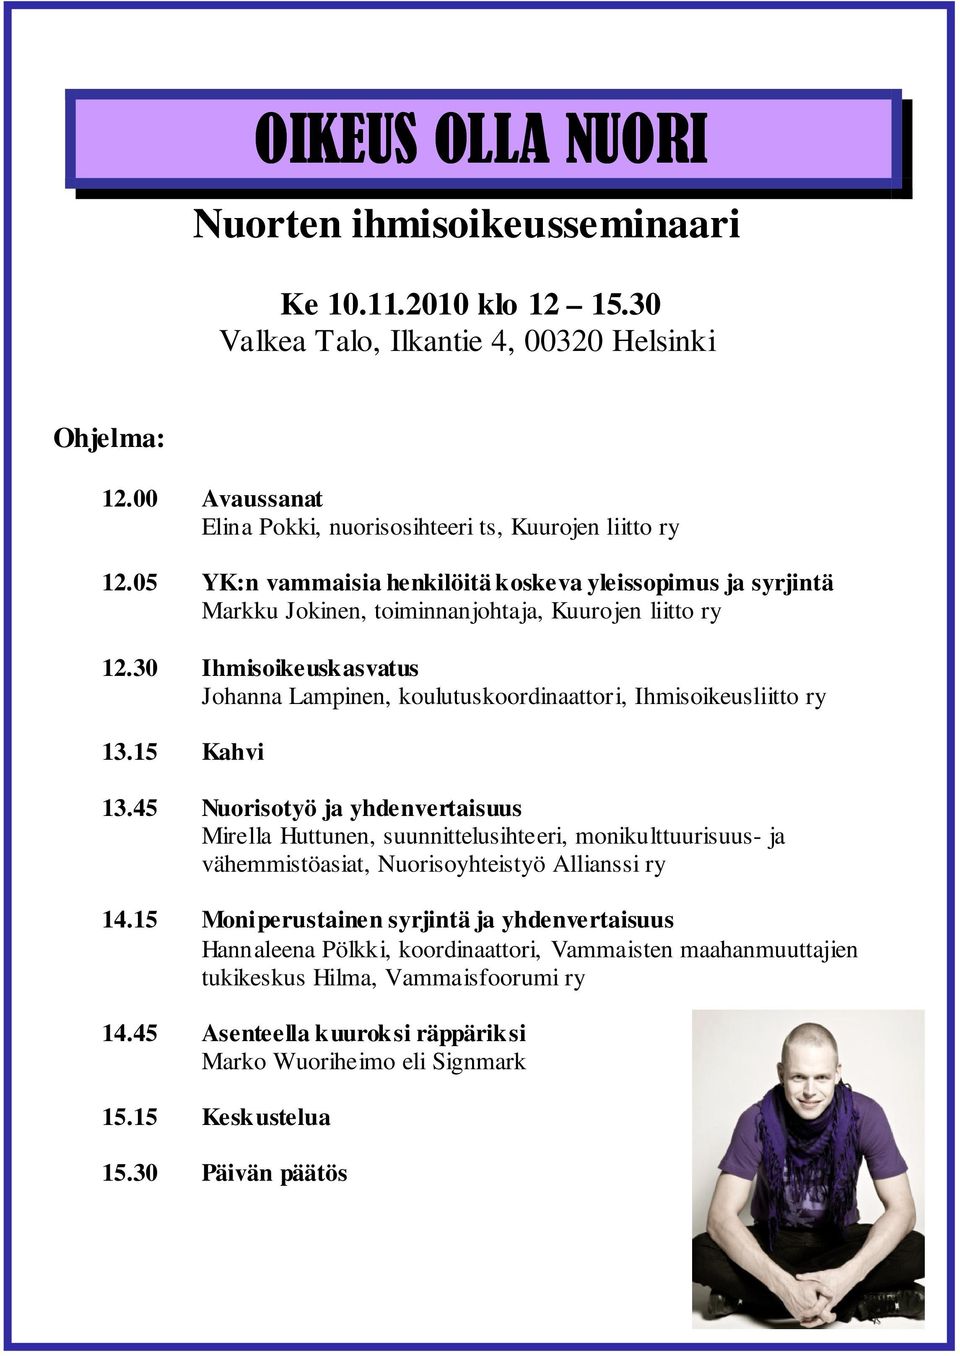 30 Ihmisoikeuskasvatus Johanna Lampinen, koulutuskoordinaattori, Ihmisoikeusliitto ry 13.15 Kahvi 13.